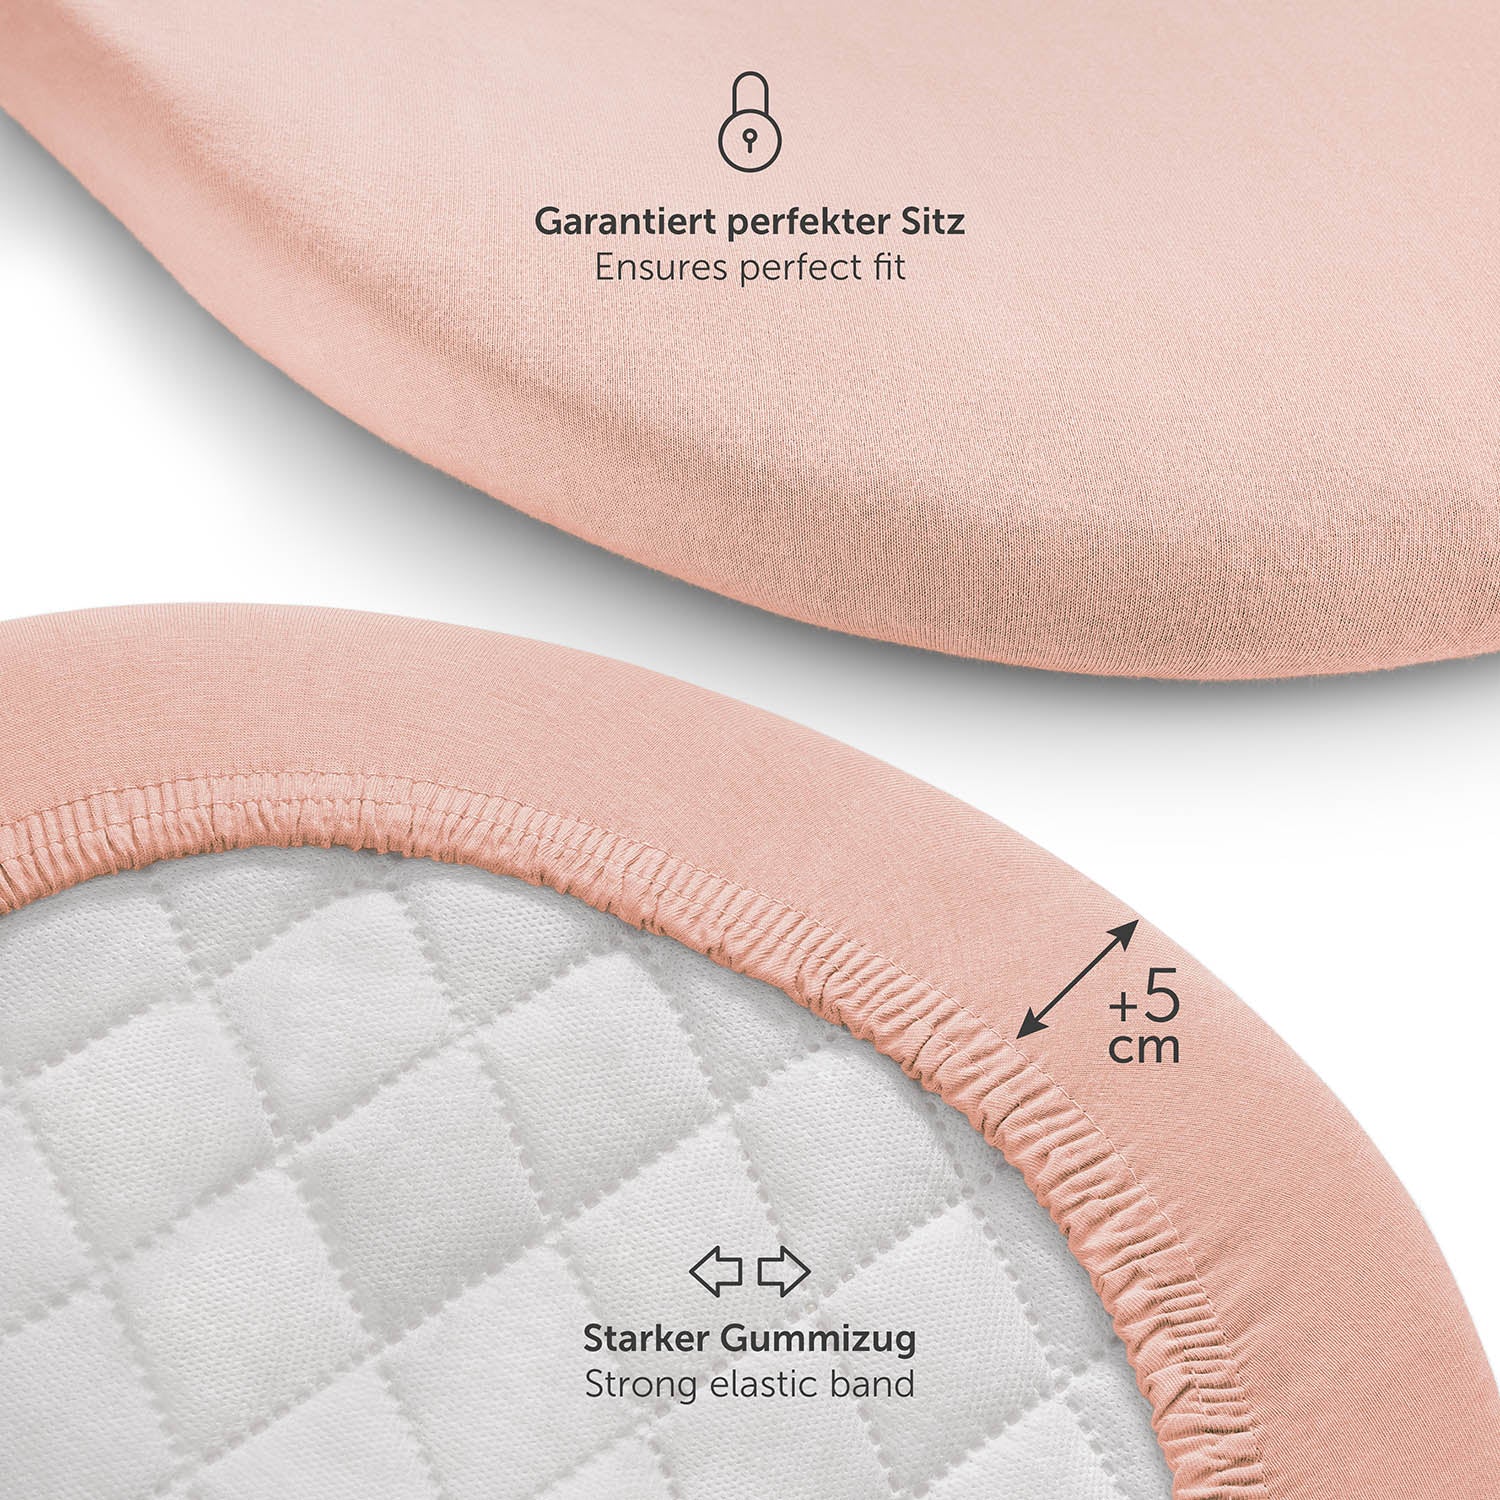 Produktverpackung für Premium Spannbetttücher in rosa Farben mit Öko-Tex Standard 100 Siegel.